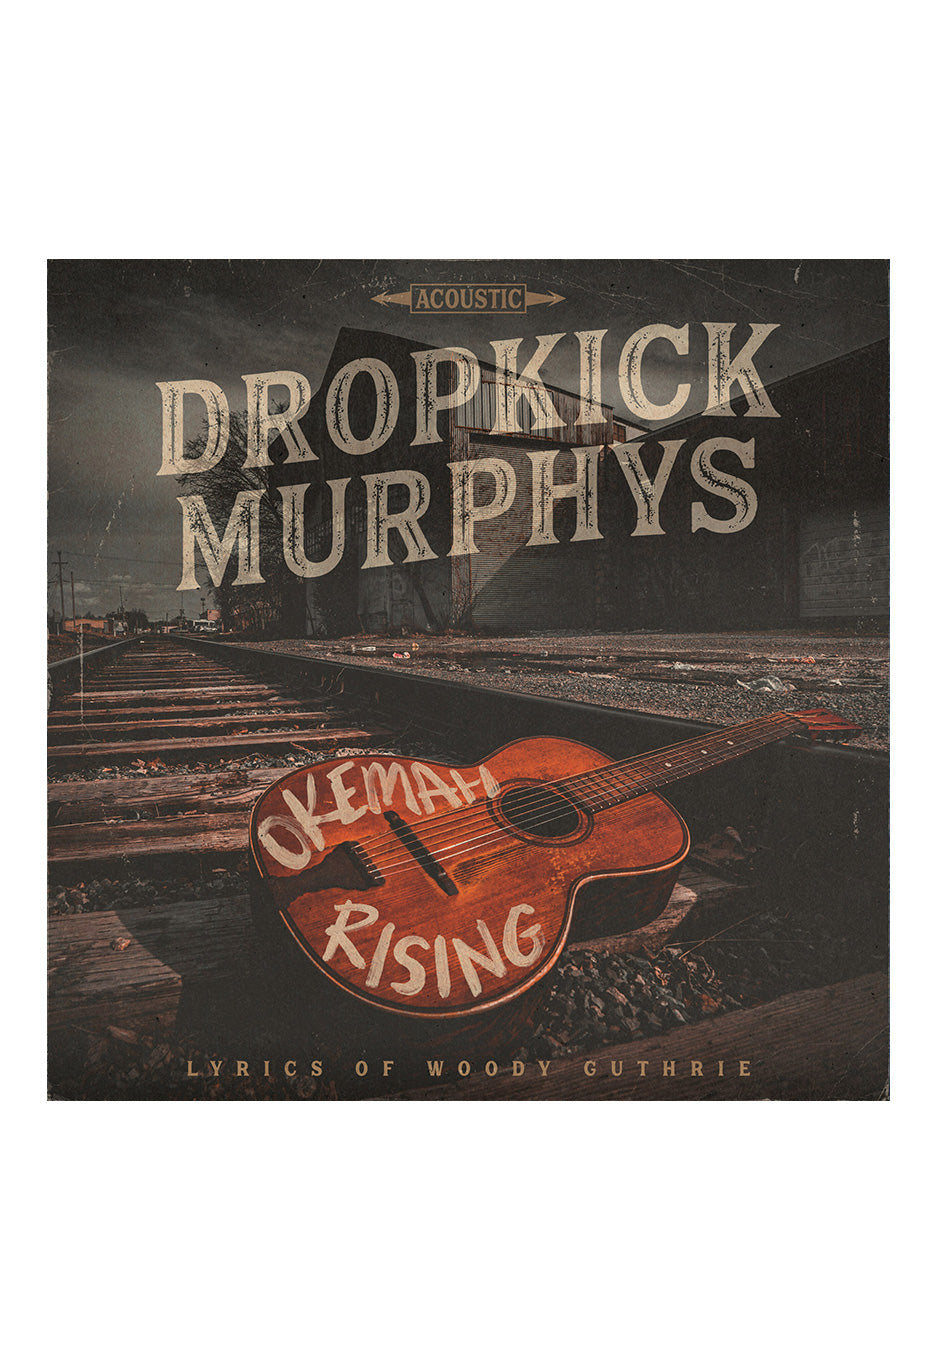 Dropkick Murphys - Okemah Rising - Vinyl